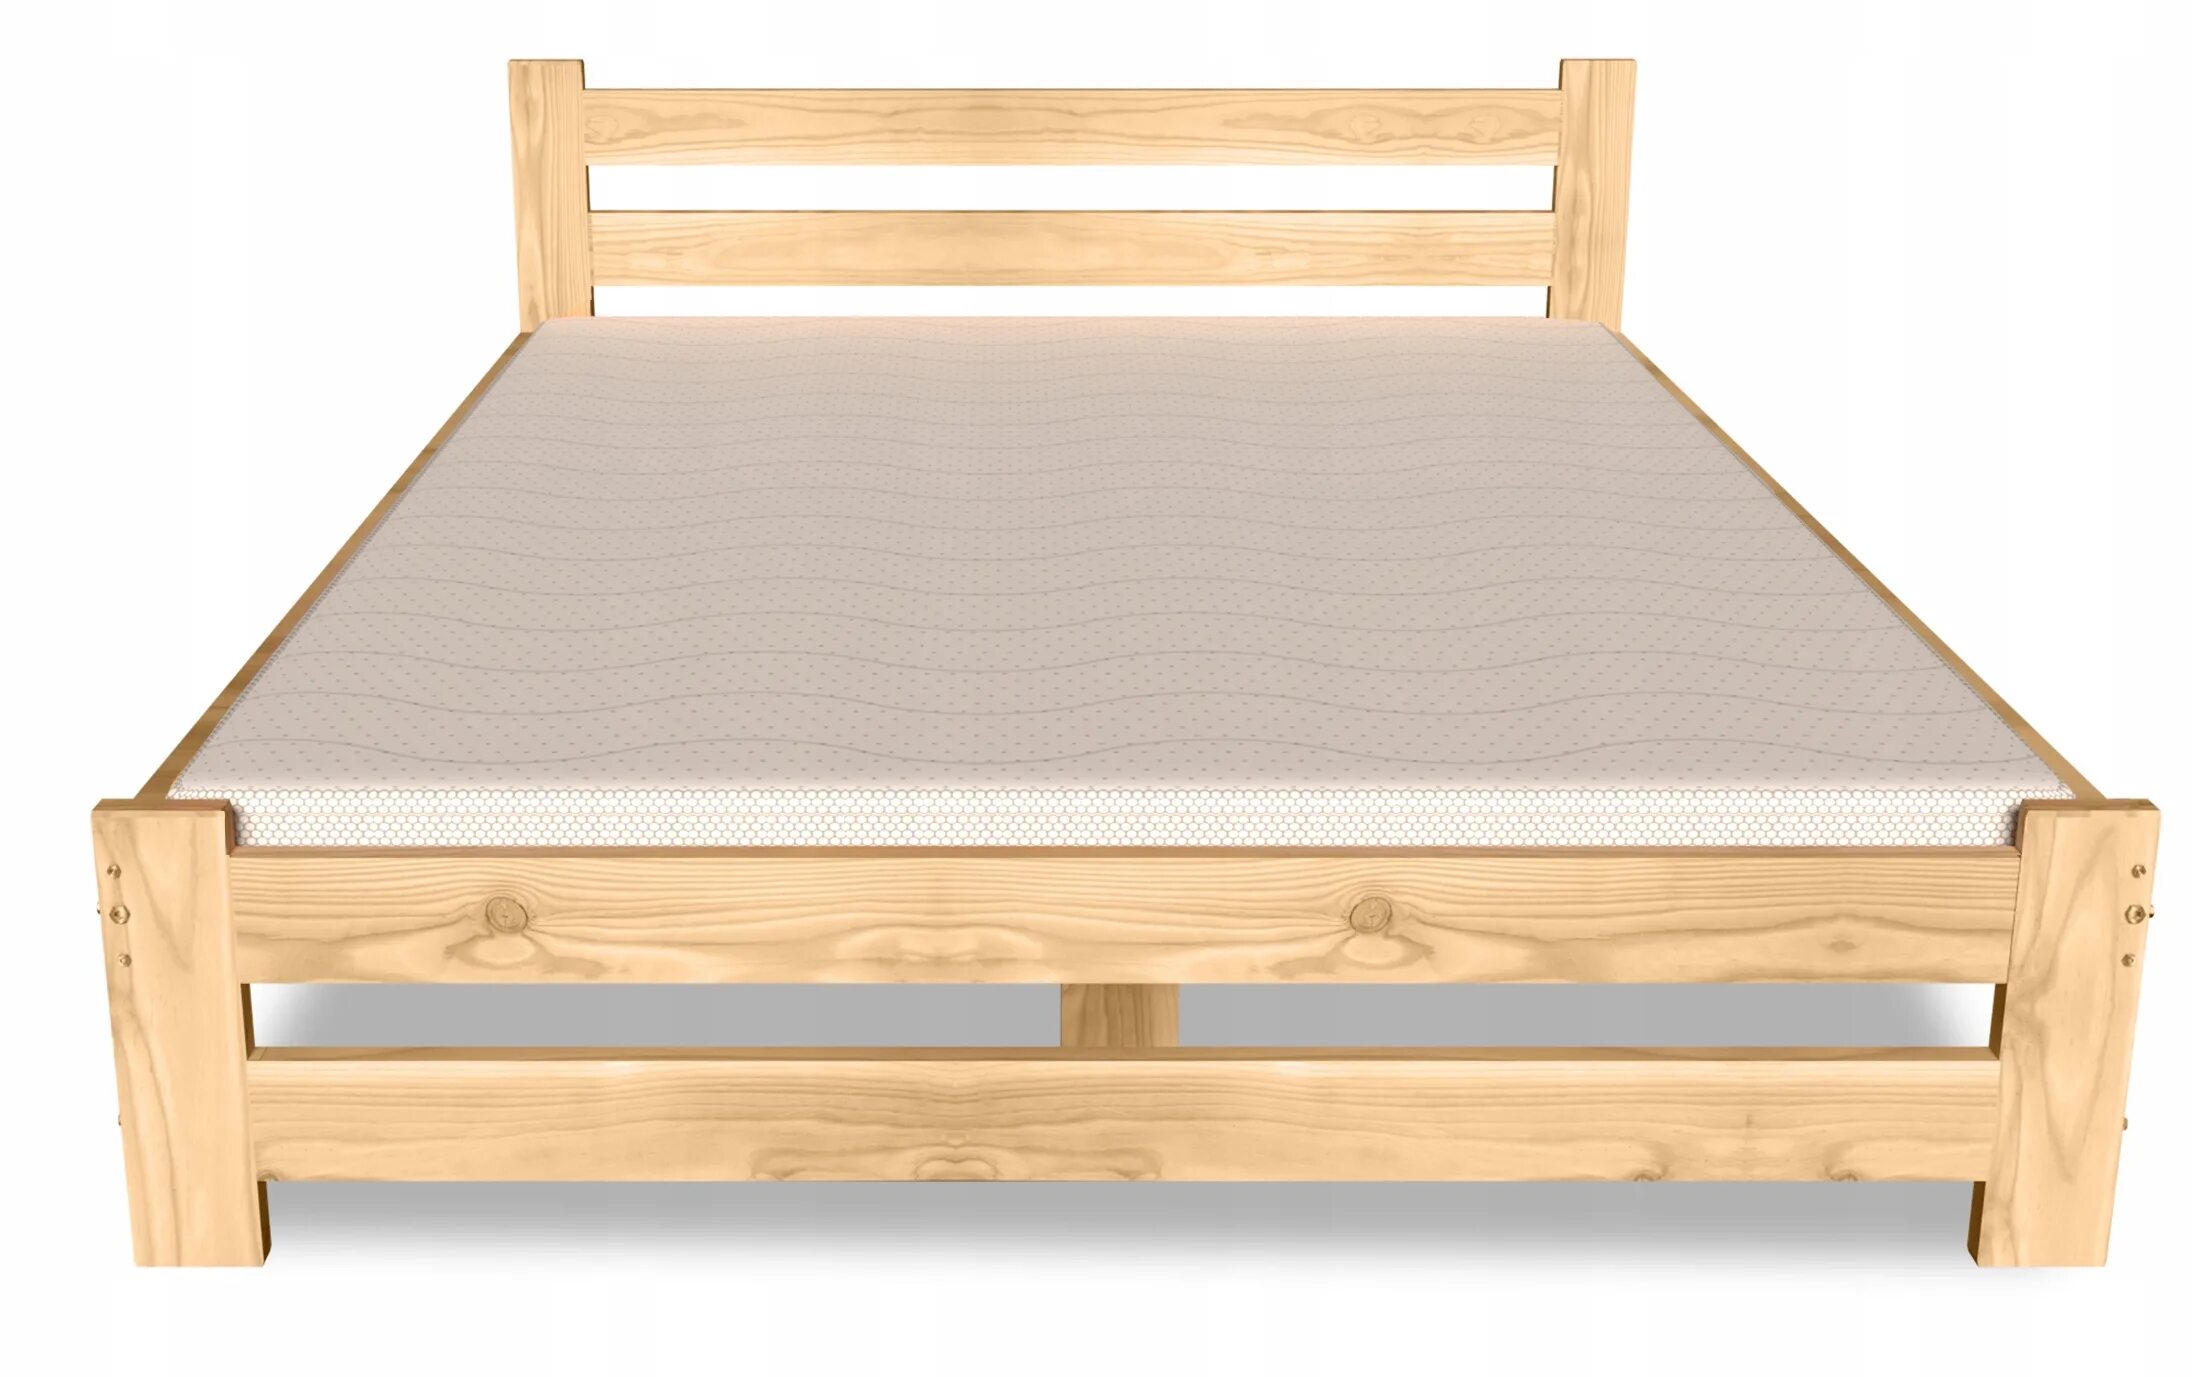 Купить деревянную кровать недорого. Кровать деревянная 160х200 из сосны икеа. Кровать maxima 120x200. Деревянная кровать 120х200 икеа.